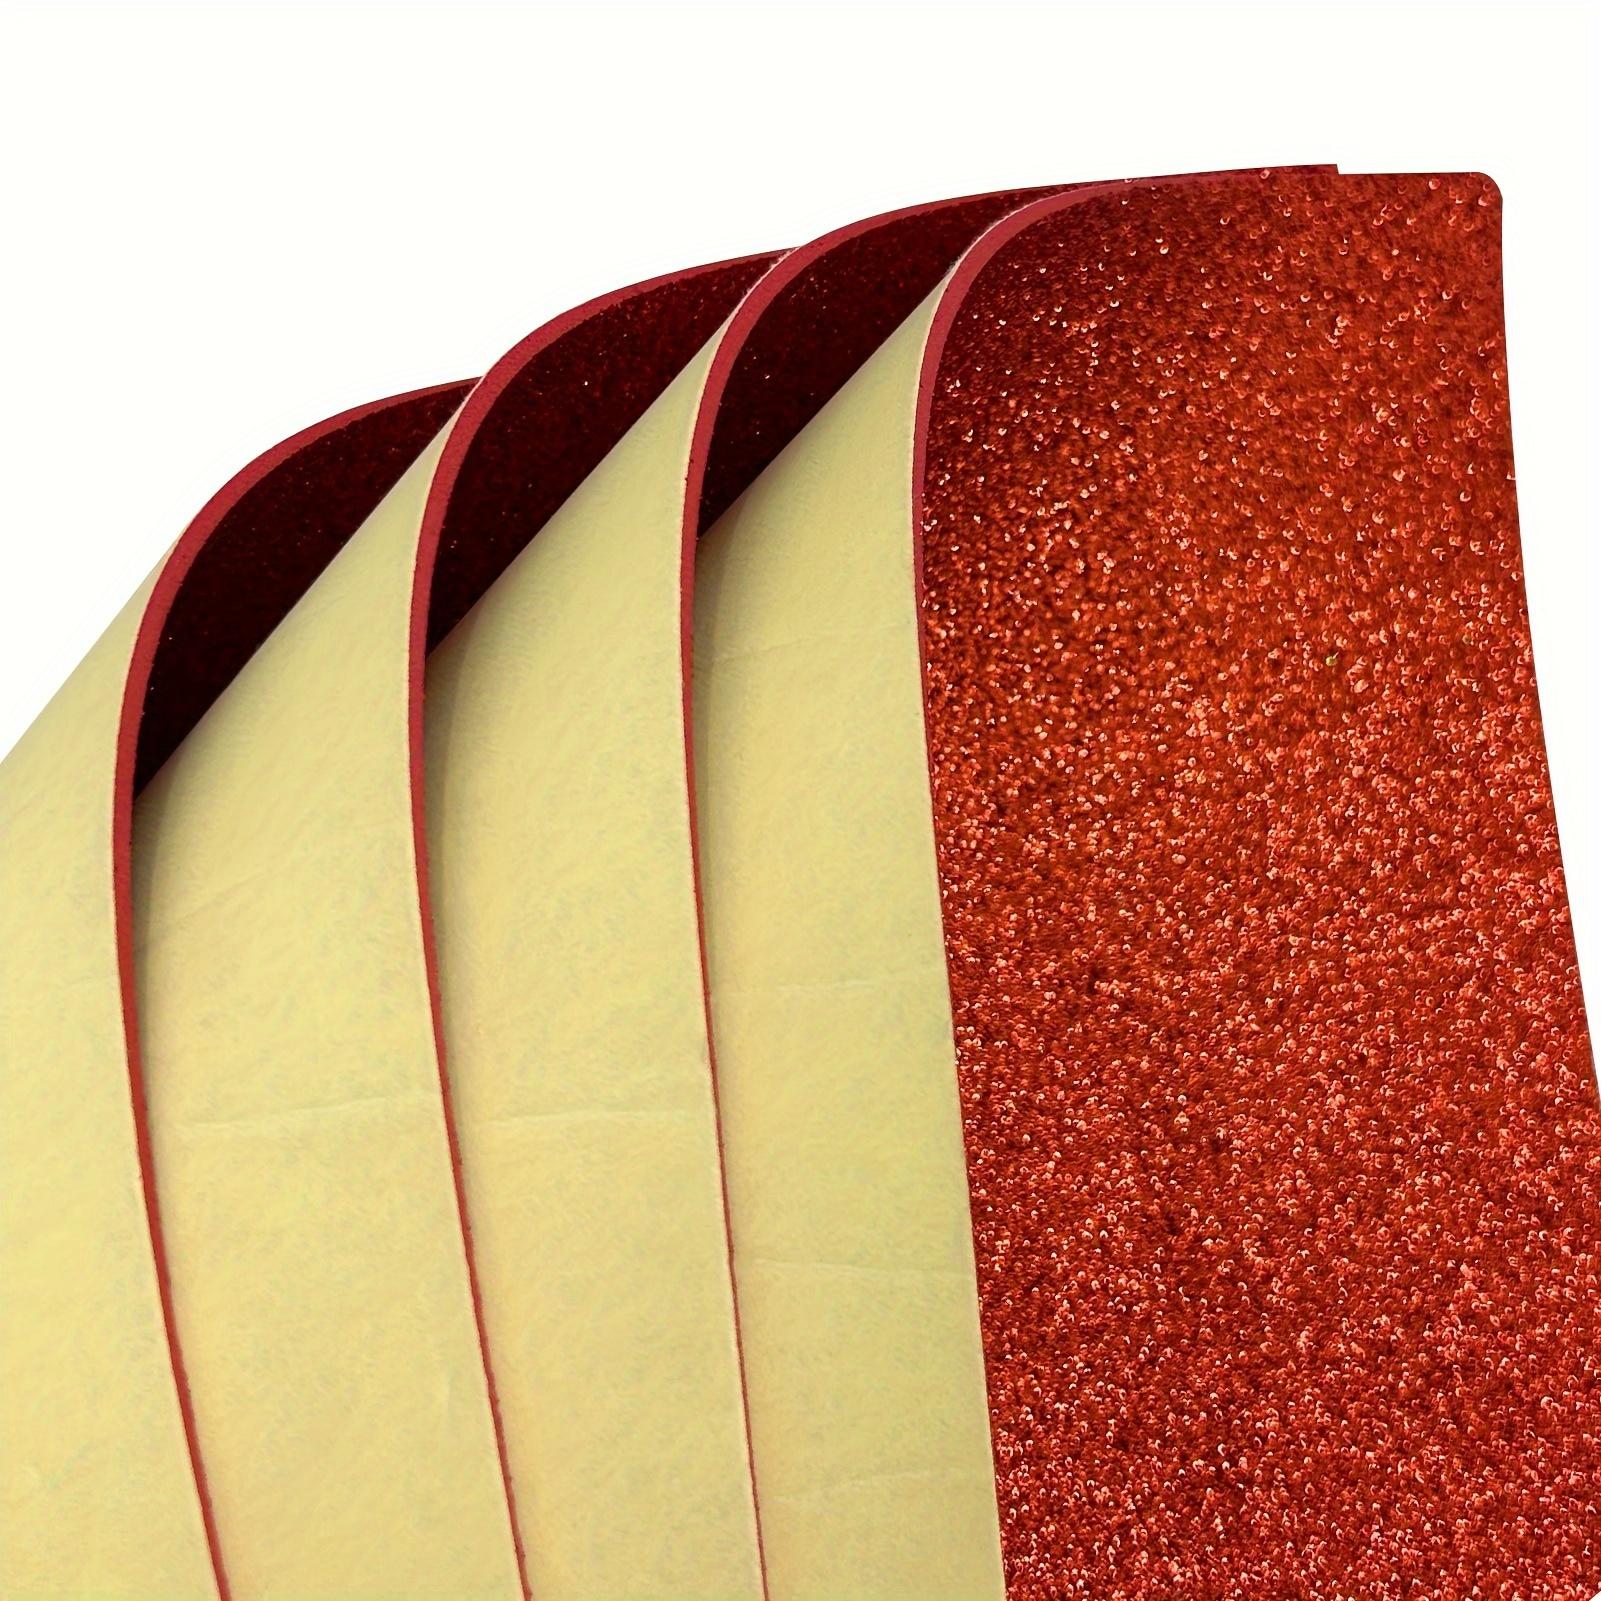 10sheets Adhesive Glitter Foam Sheet Letter Size Craft Foam Color EVA Foam  With Sticky Back Colorful Sponge Board Foamy (11.81*7.87inch)